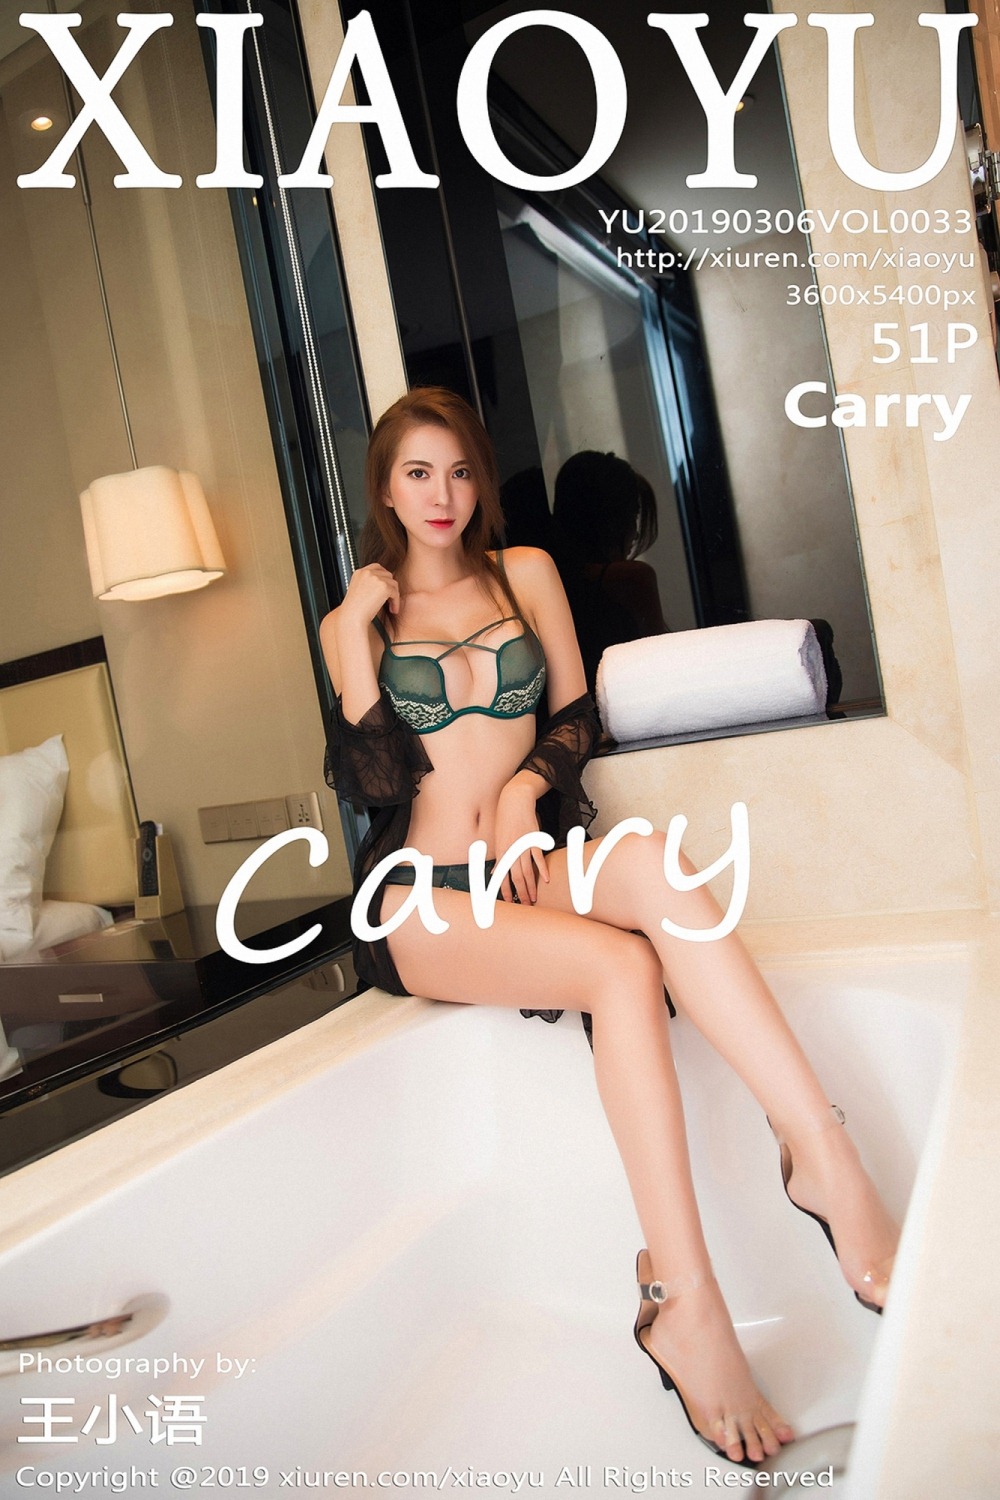 [XiaoYu画语界] 2019.03.06 VOL.033 carry